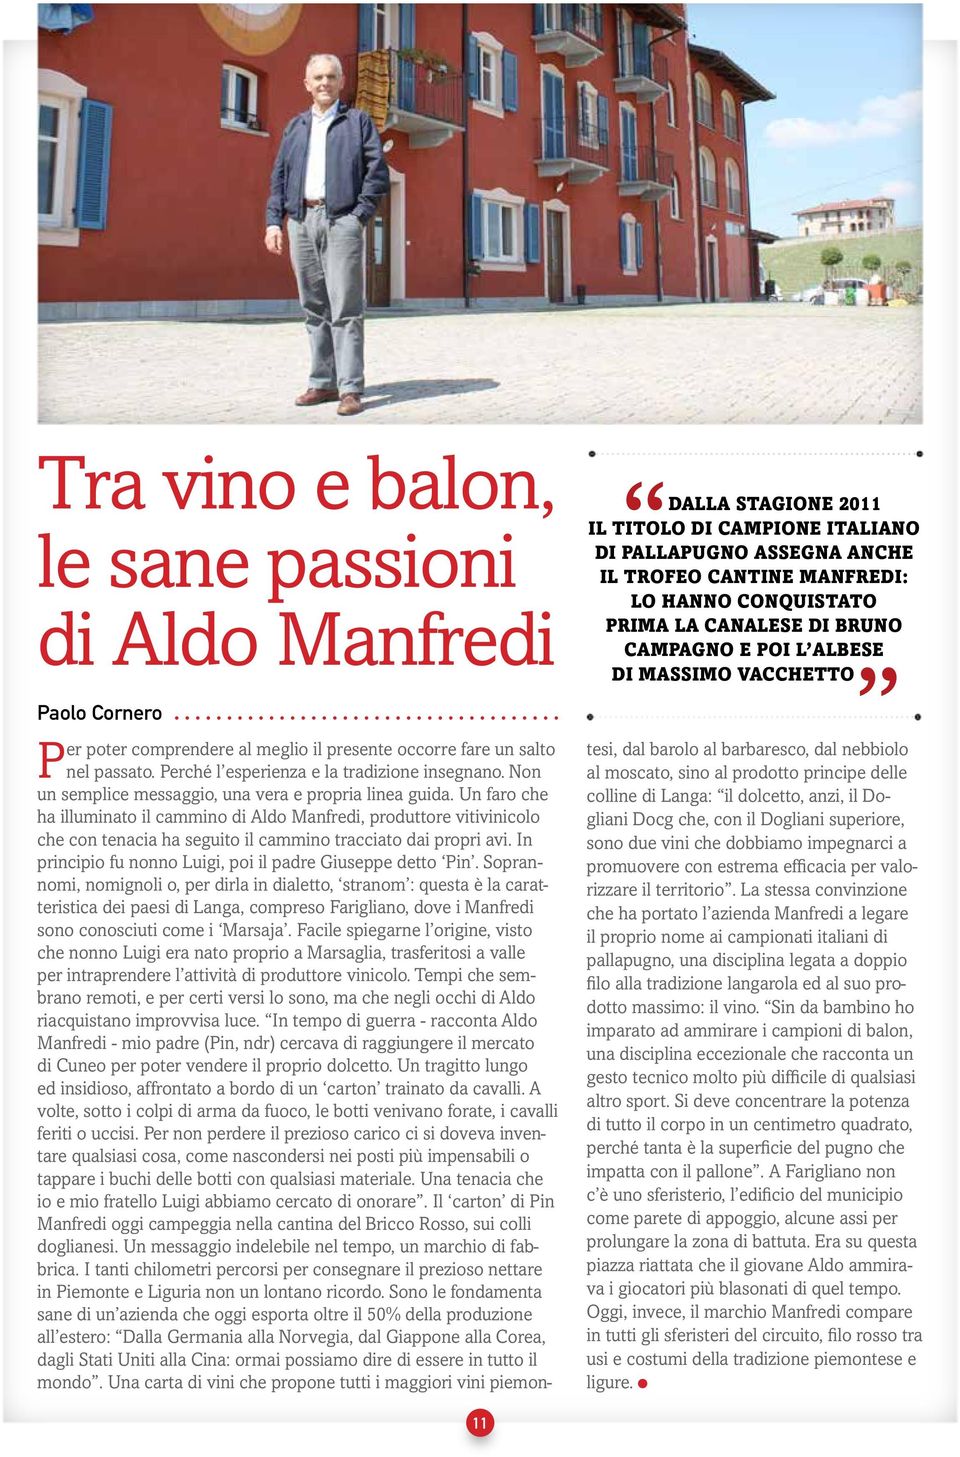 Un faro che ha illuminato il cammino di Aldo Manfredi, produttore vitivinicolo che con tenacia ha seguito il cammino tracciato dai propri avi.